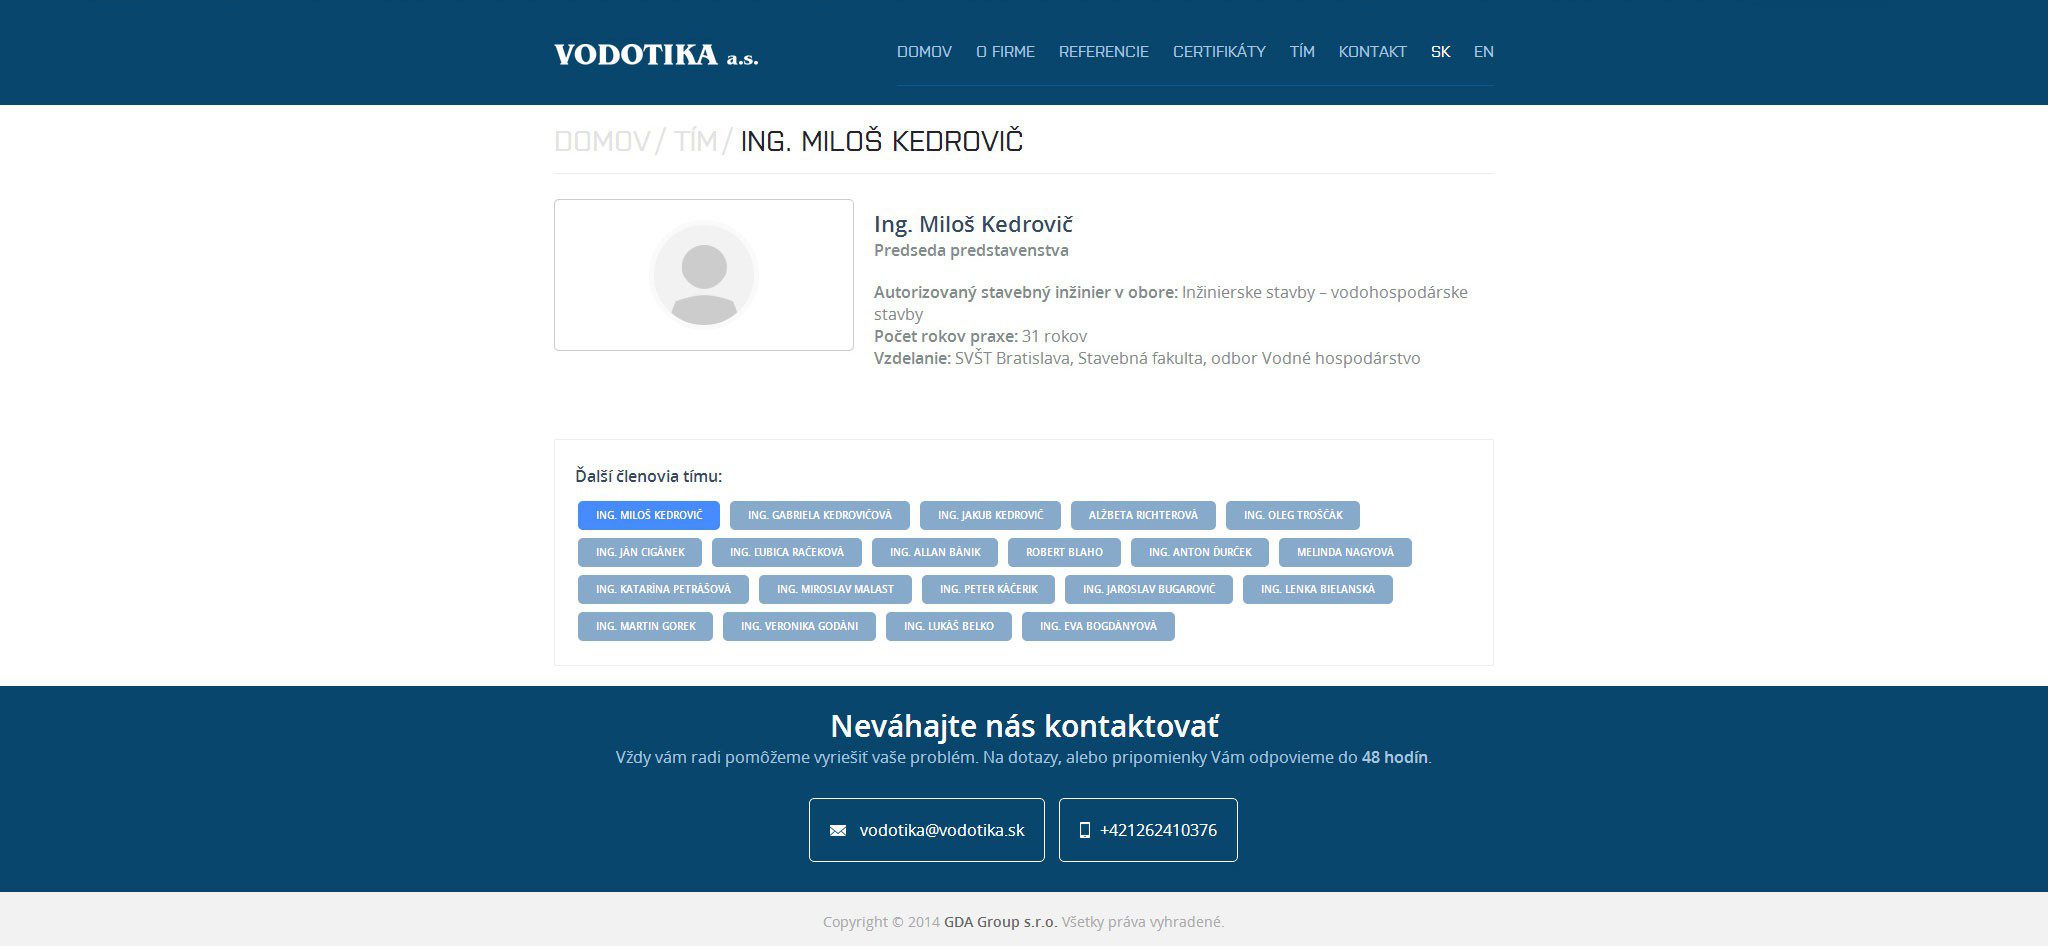 Образование веб-сайтов - VODOTIKA, a.s. - подробно Участник